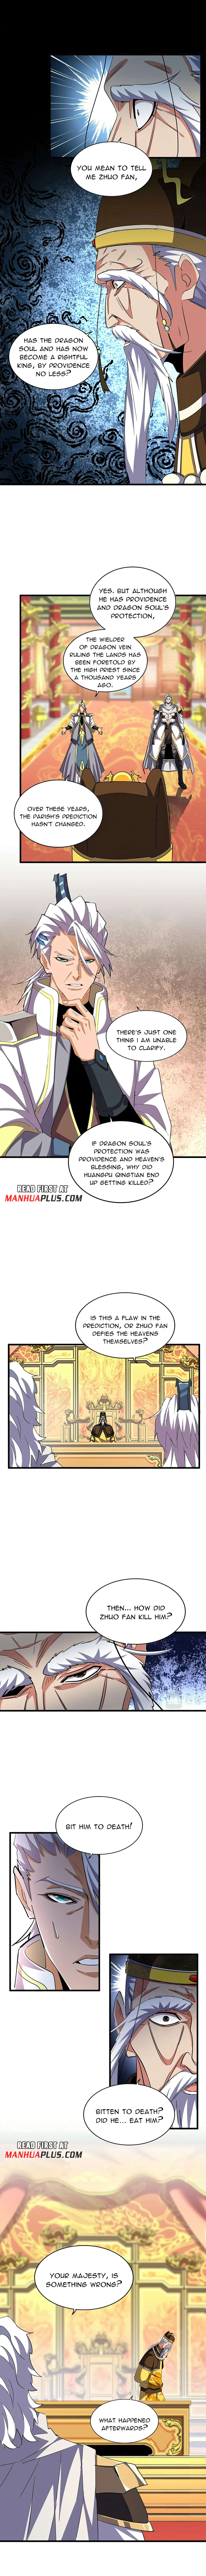 Magic Emperor - Page 2